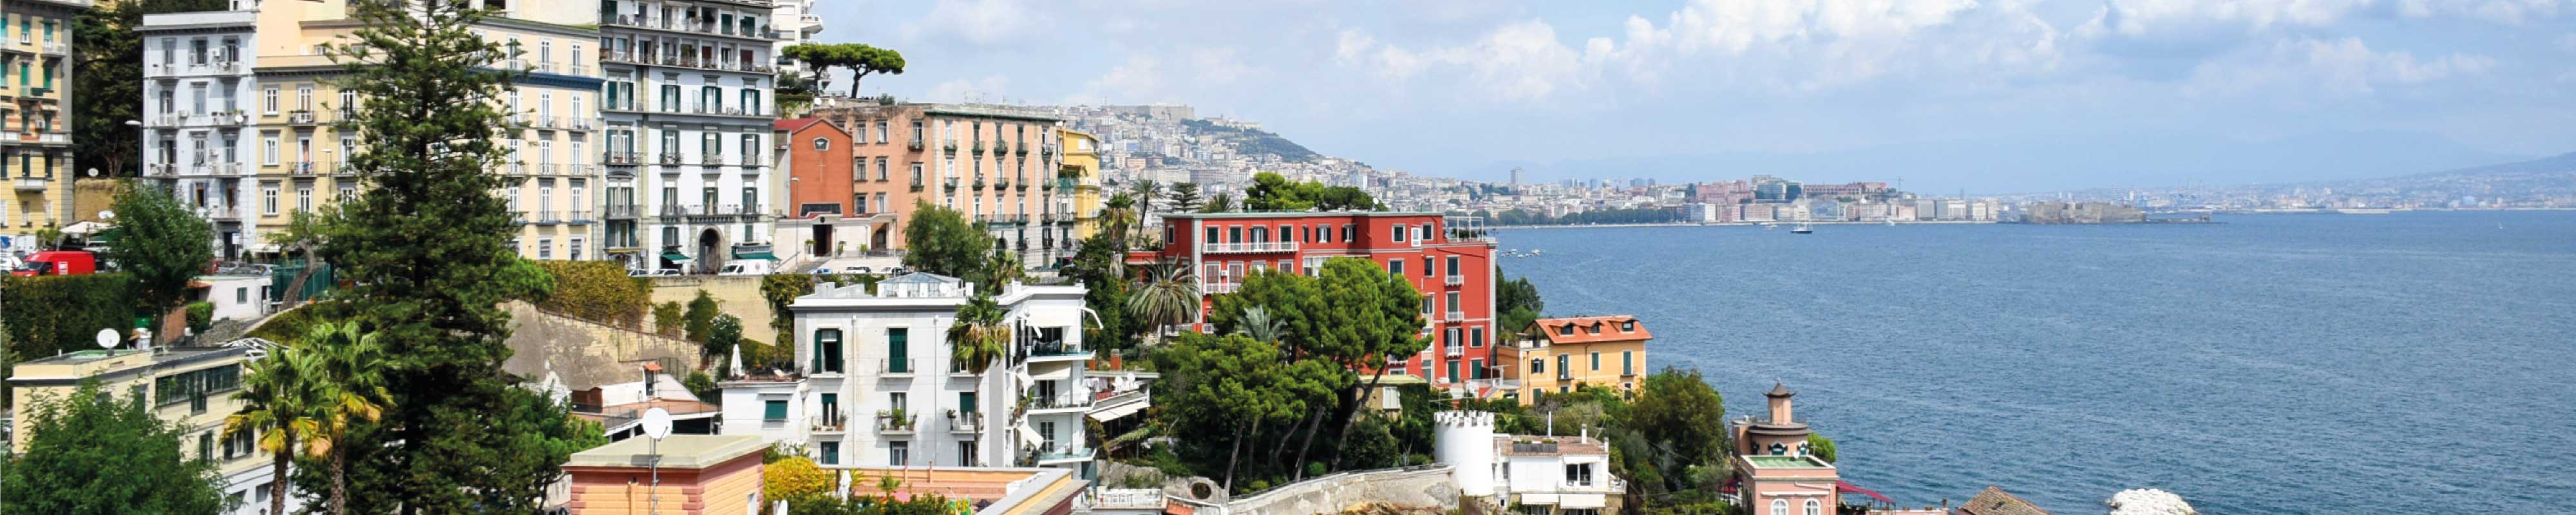 Gepäckaufbewahrung | Stadtzentrum von Neapel in Neapel - Nannybag